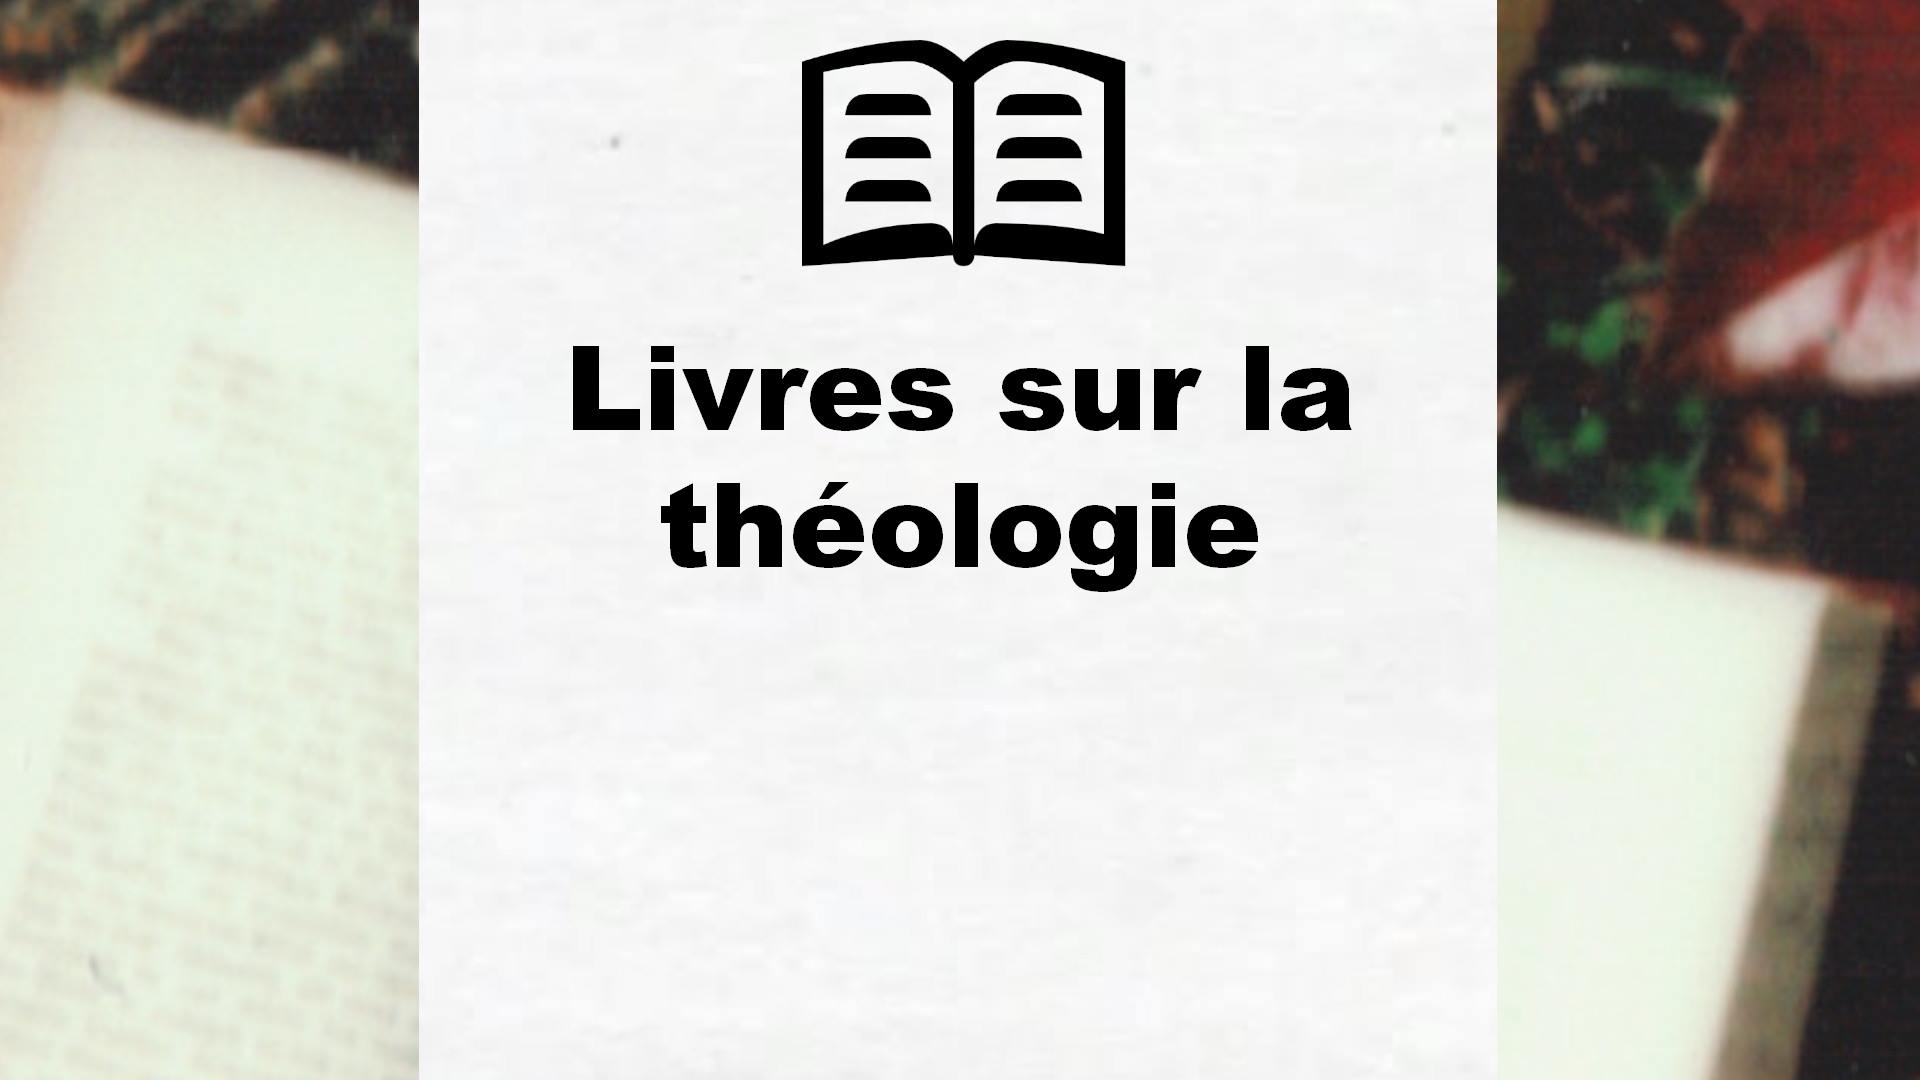 Livres sur la théologie